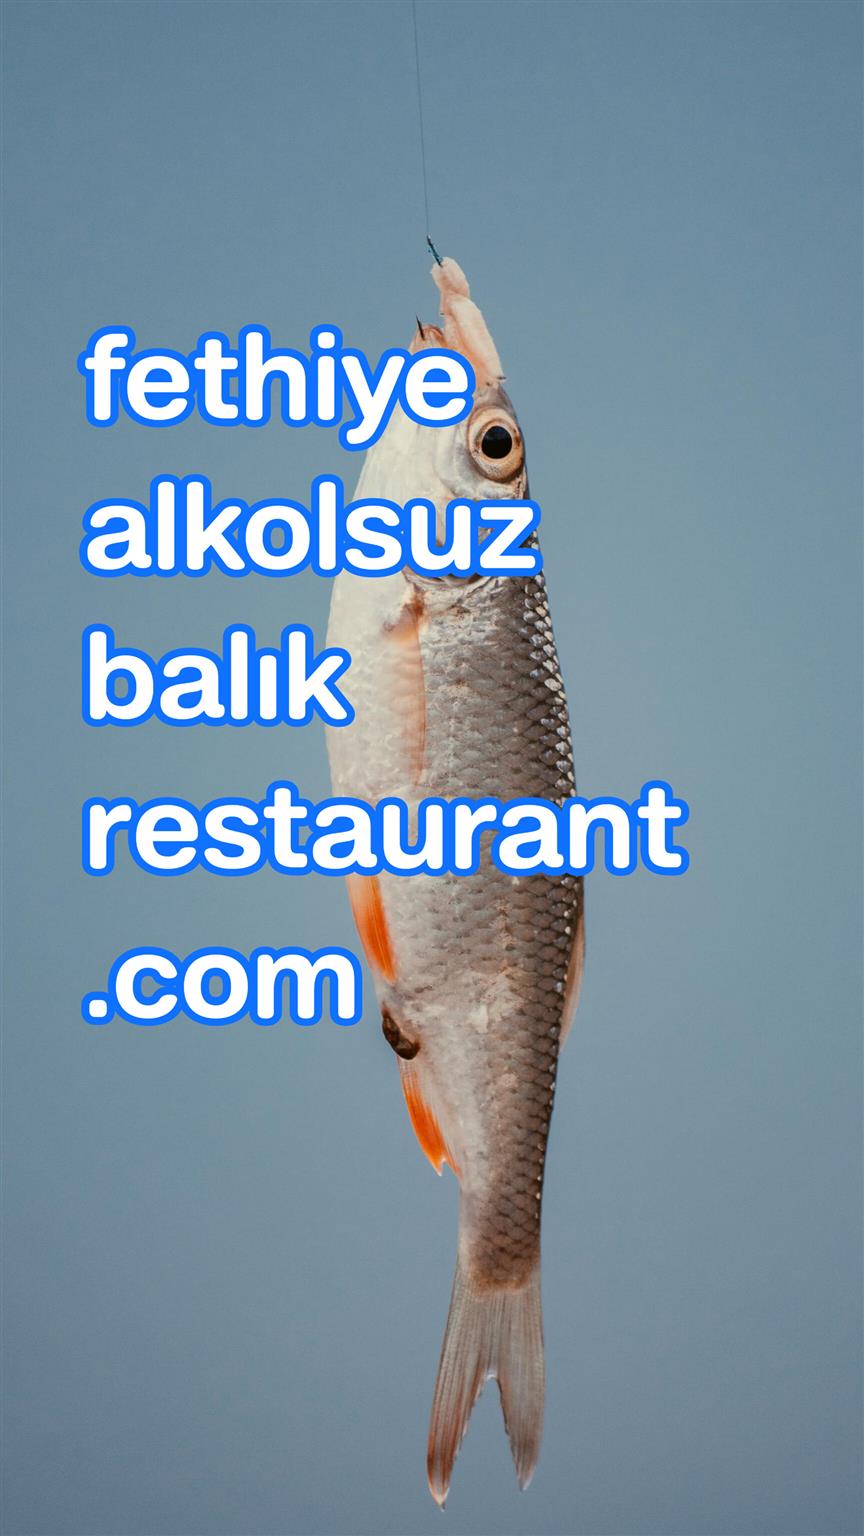 fethiyealkolsuzbalikrestaurant.com